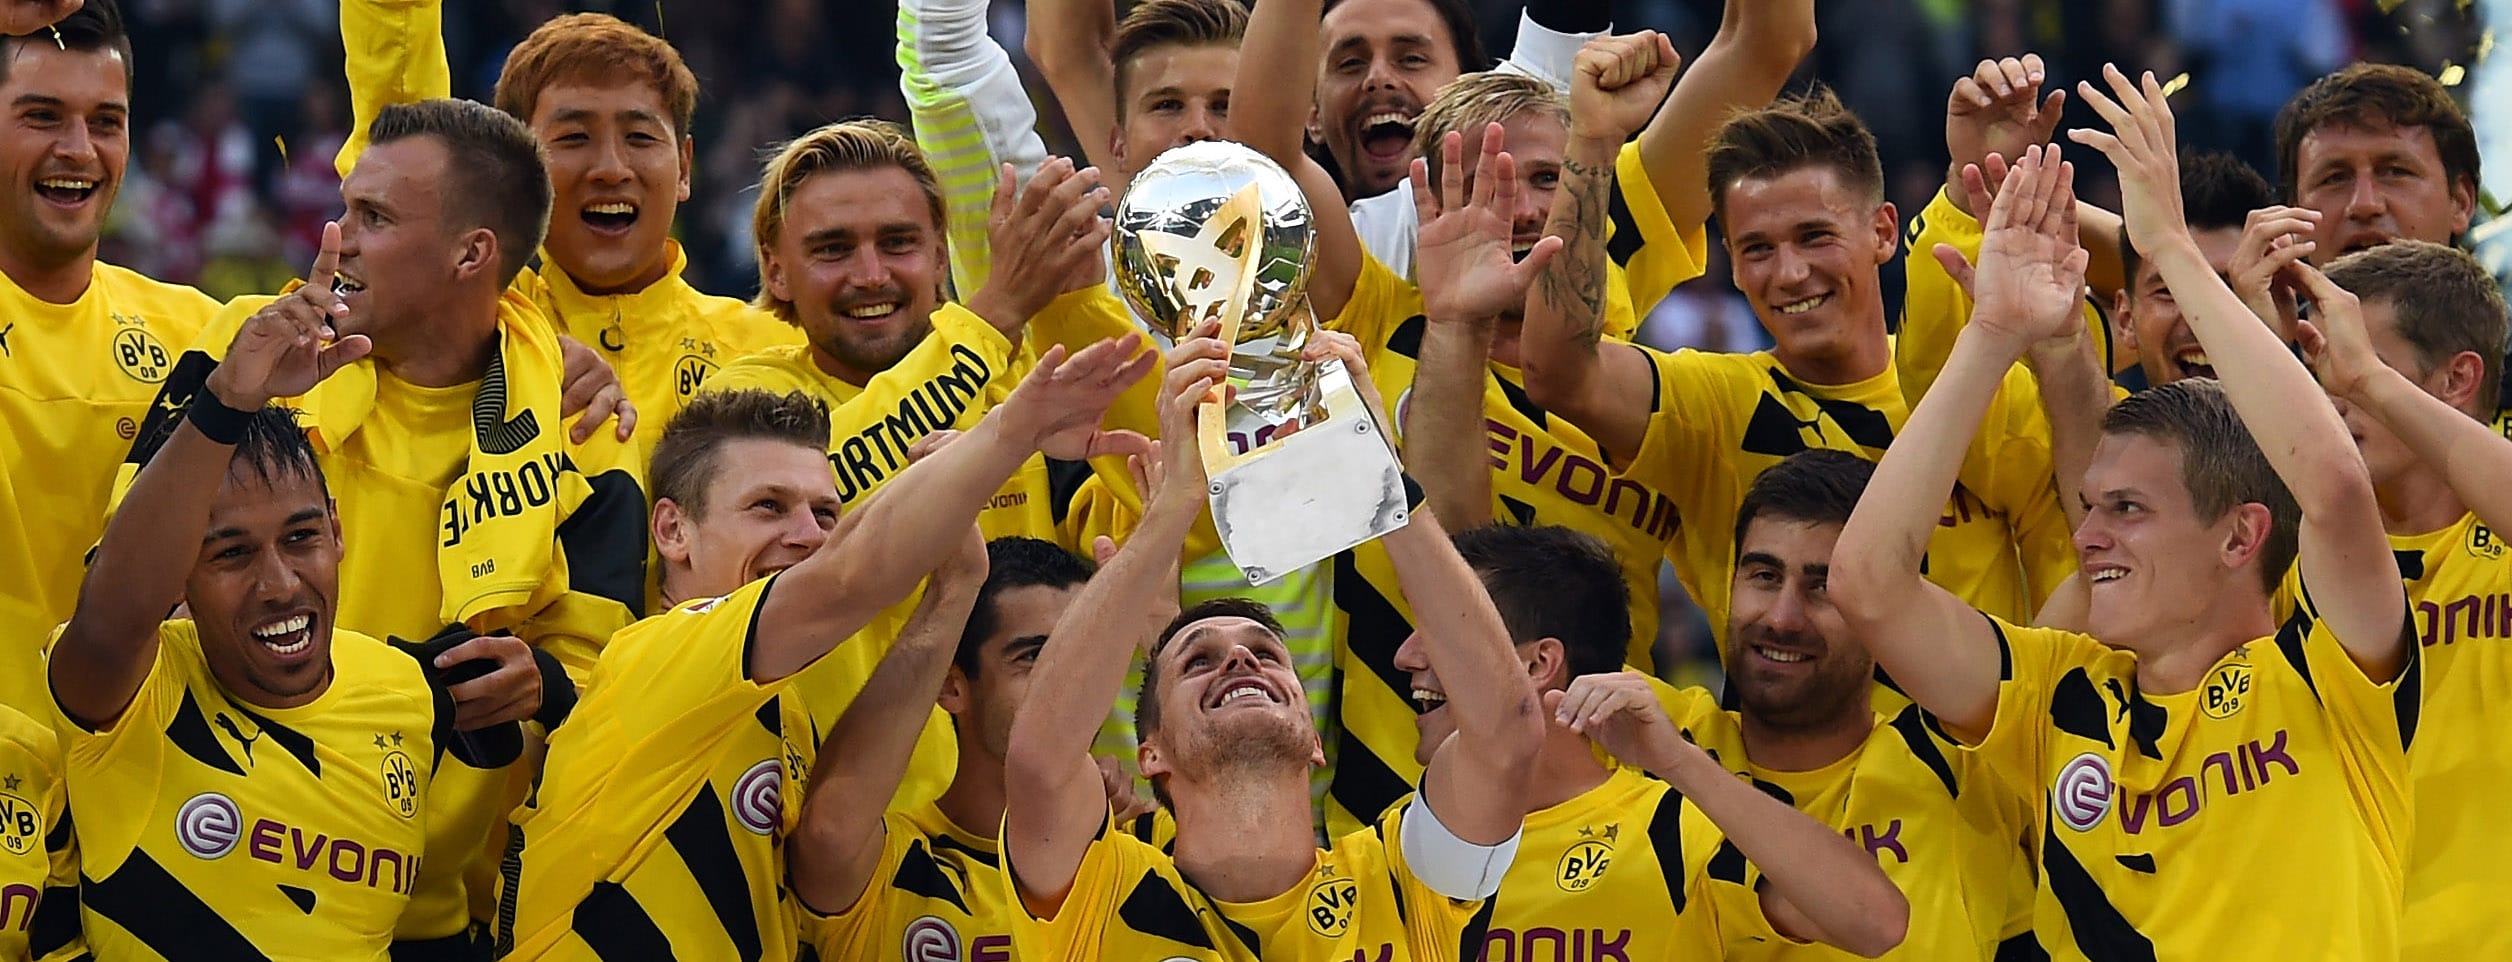 Supercup: Borussia Dortmund und Bayern München proben den Ernstfall